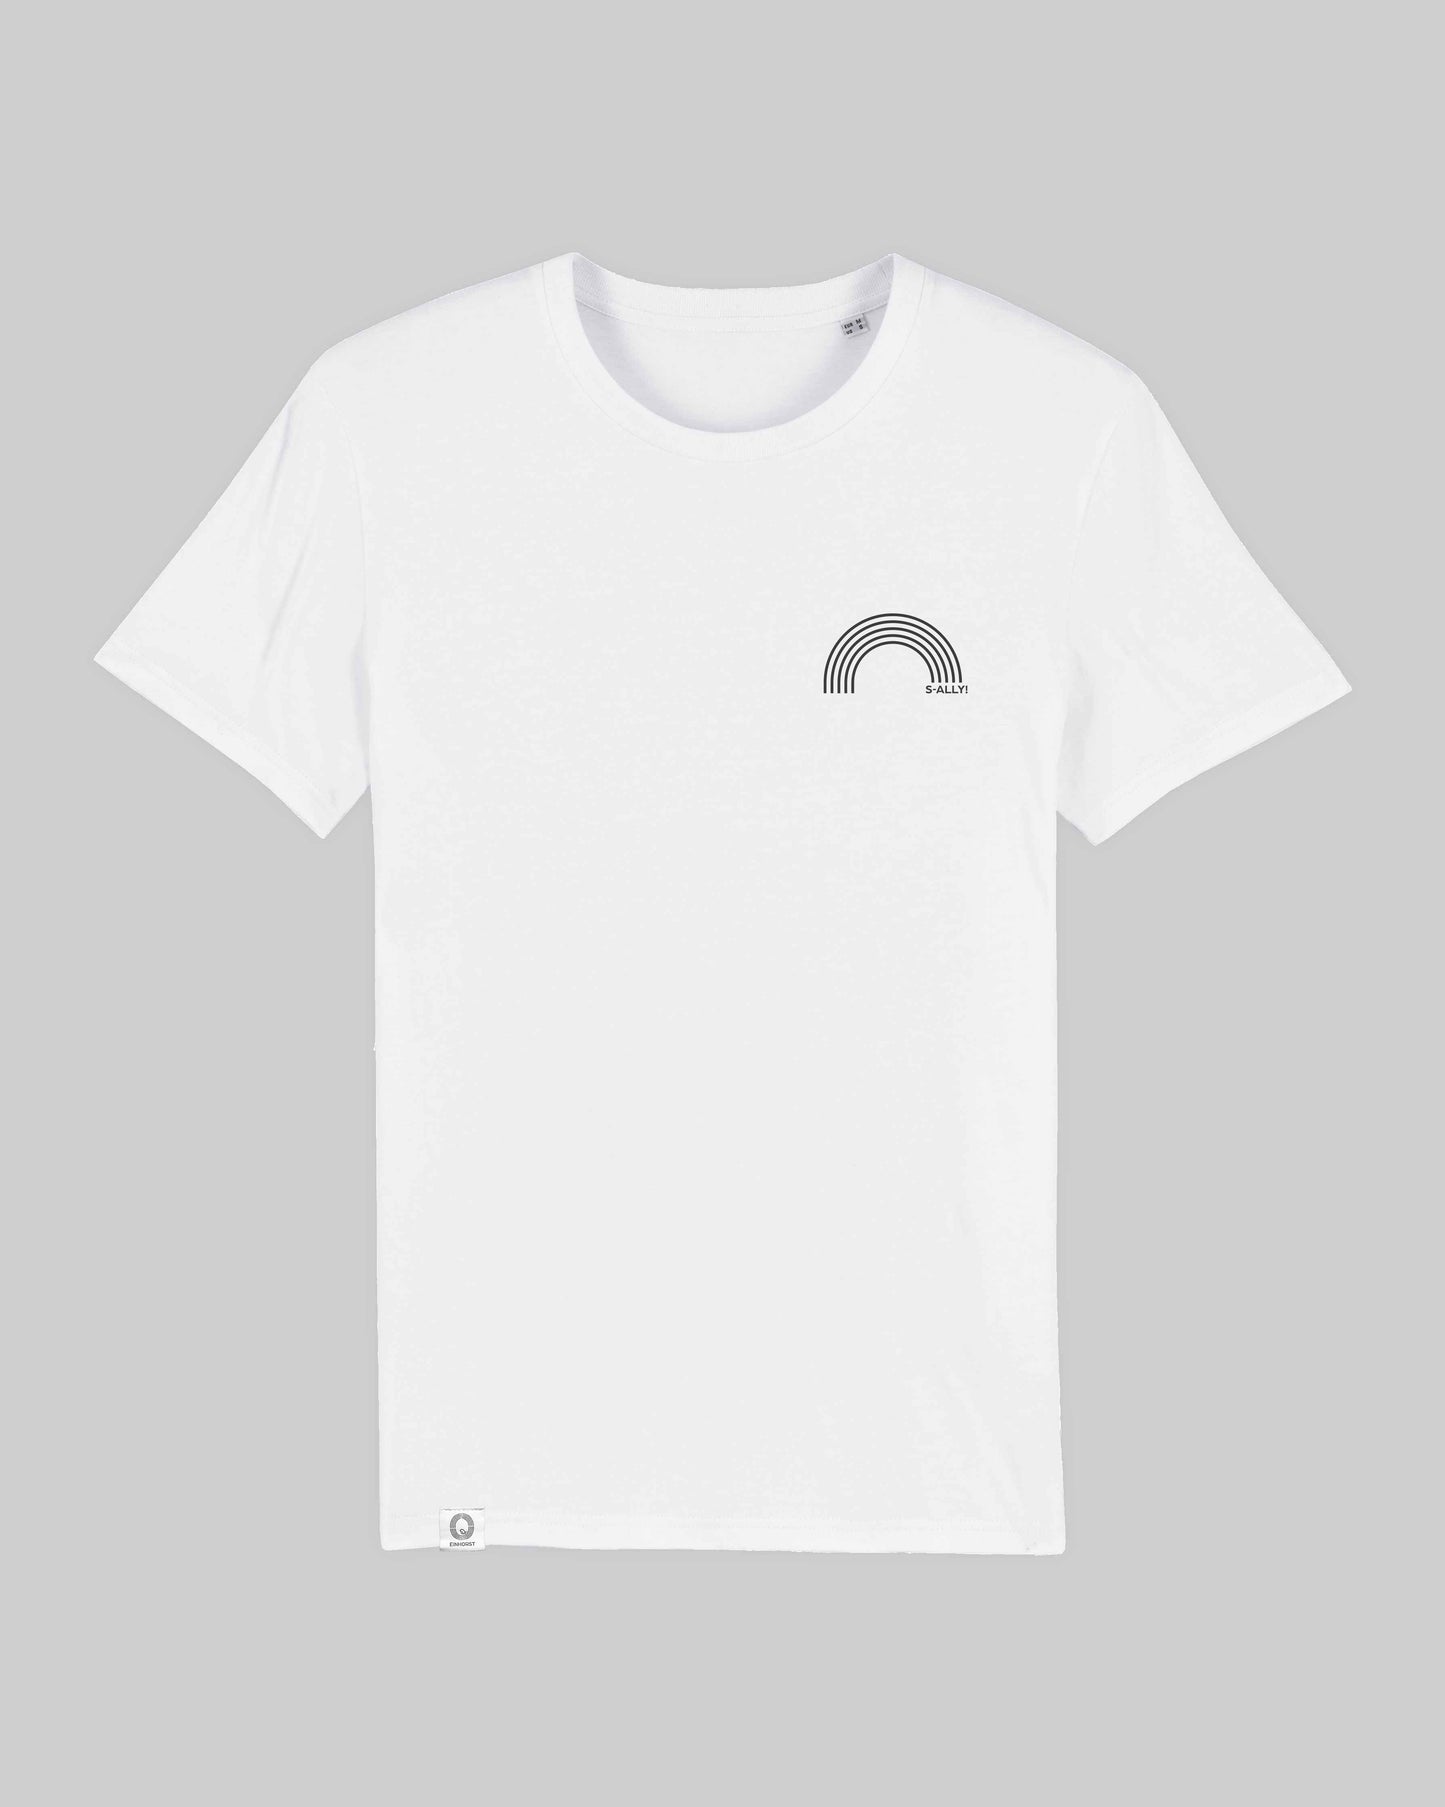 EINHORST® unisex Organic Shirt in Weiß mit dem Motiv "s-ally Regenbogen" in der Kombination schwarzer Regenbogen mit schwarzer Schrift, Bild von Shirt von vorne